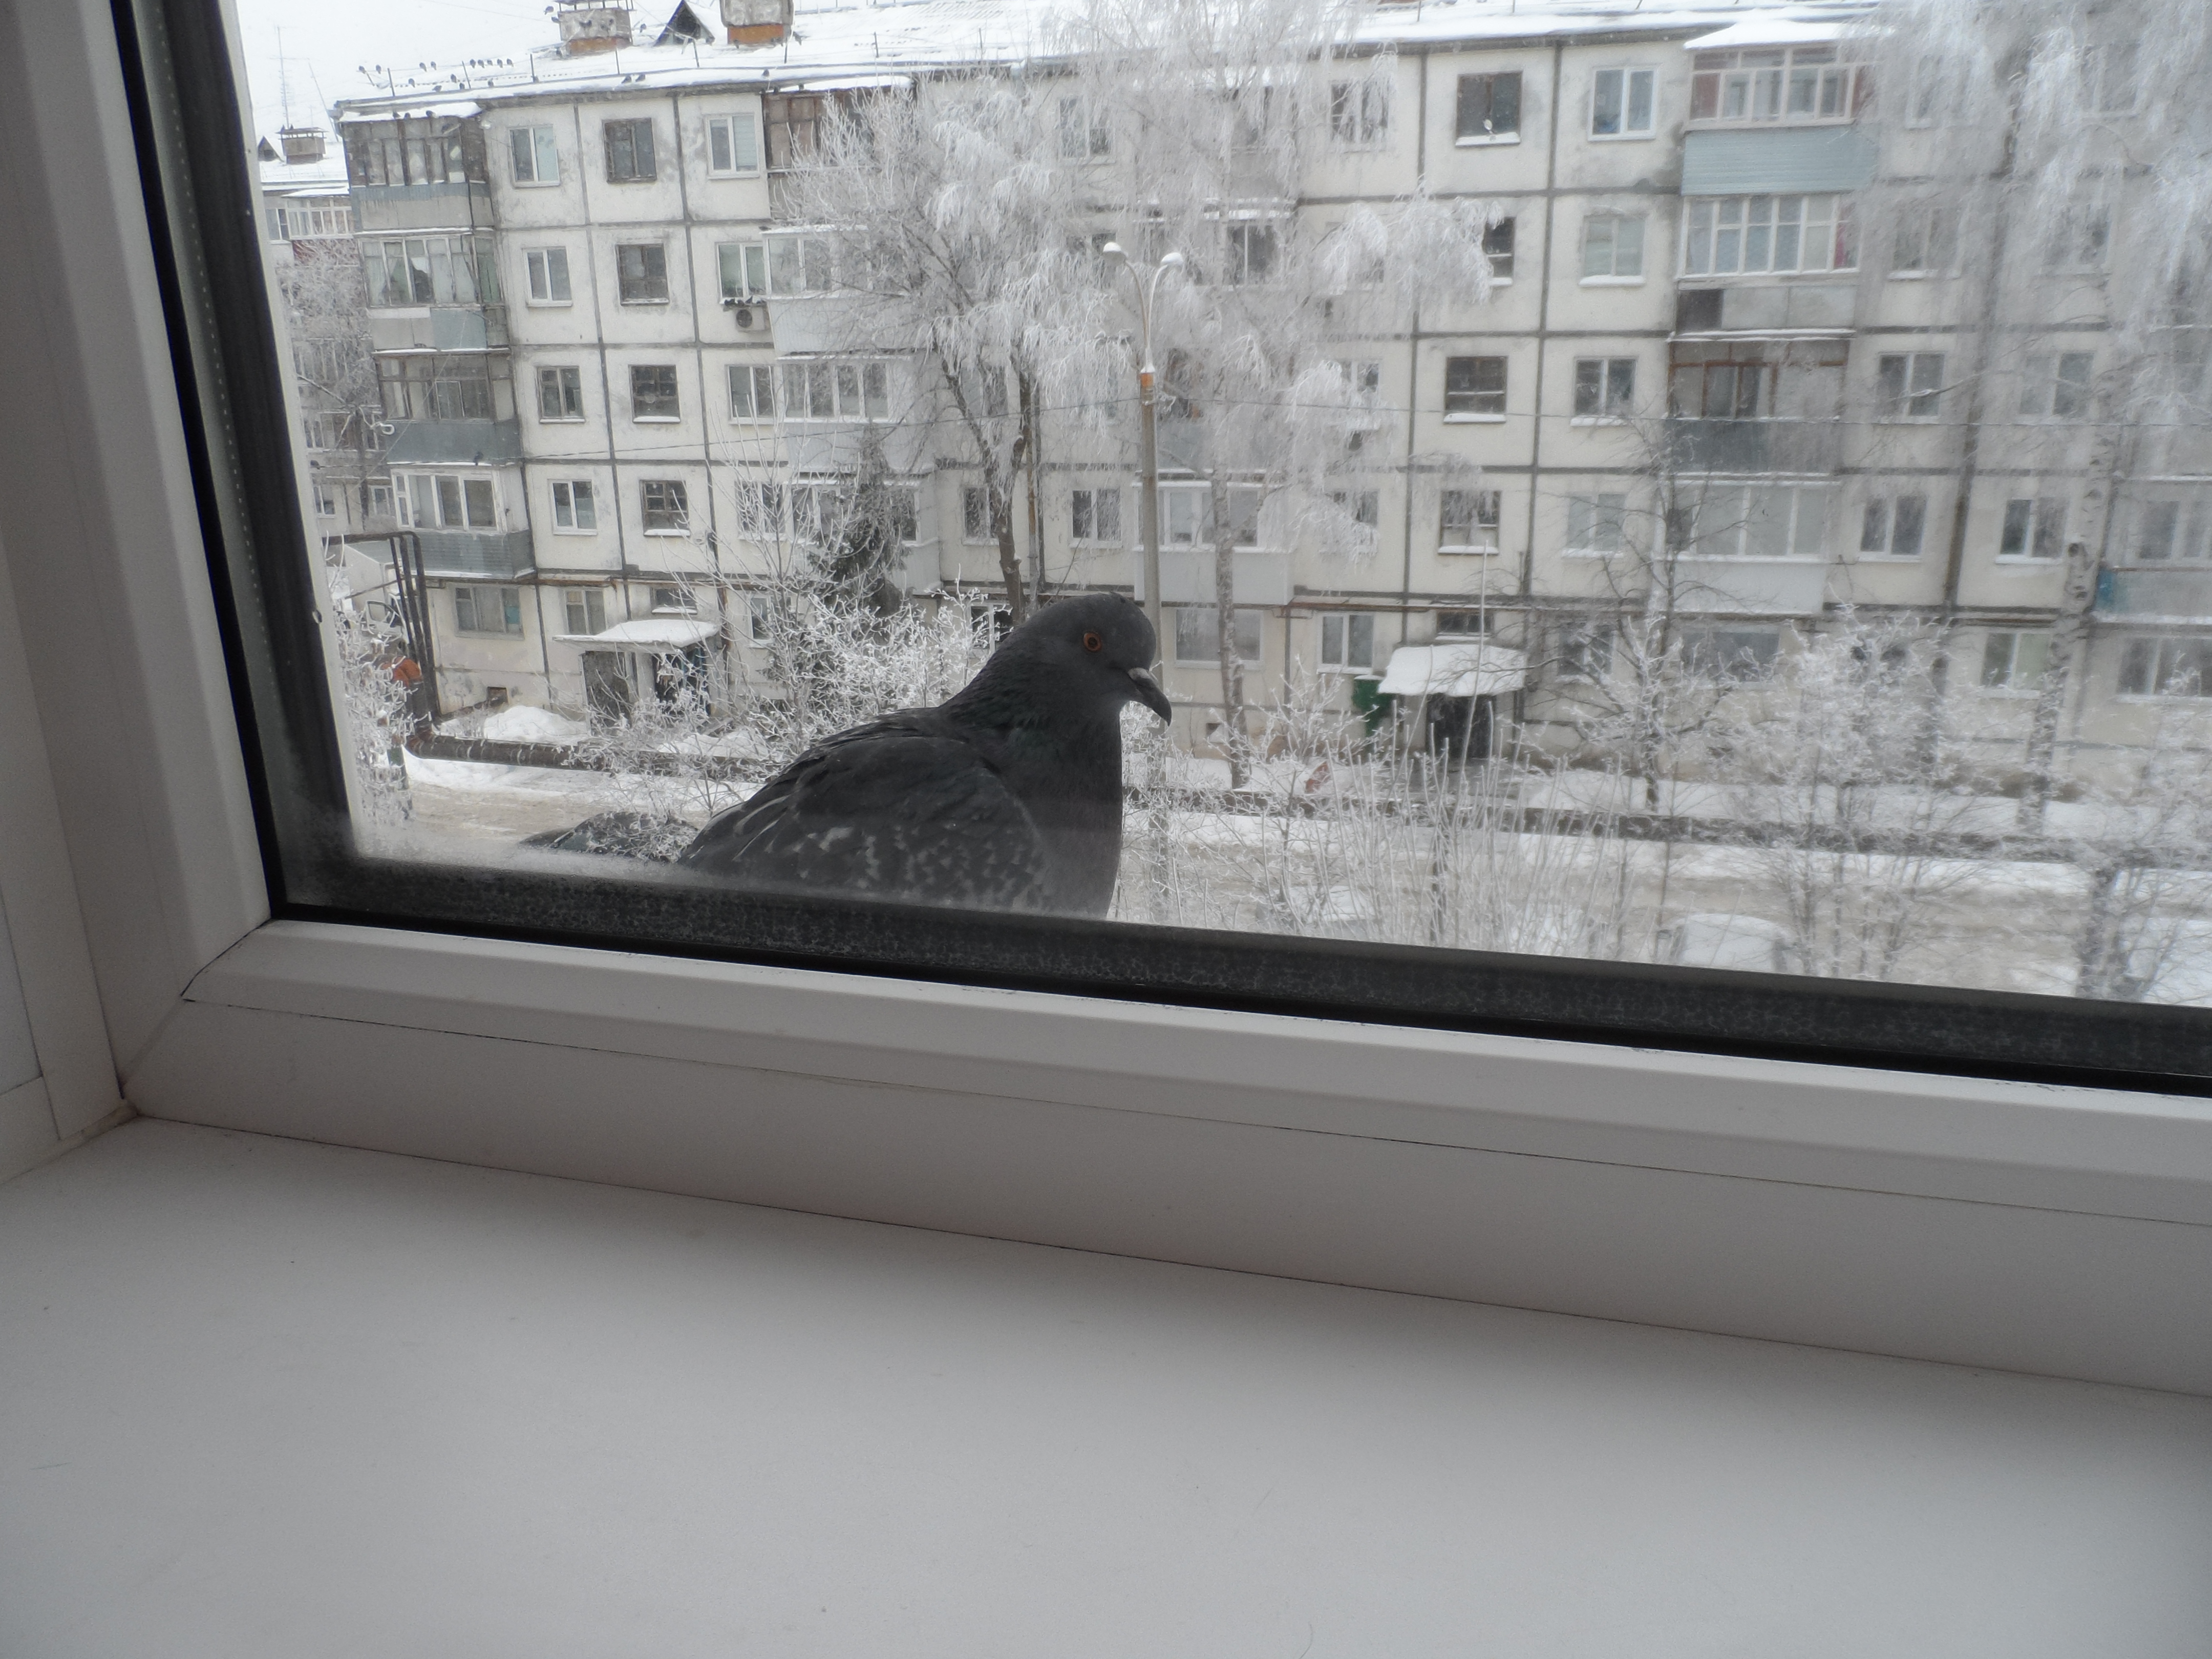 Ворона стучит в окно. Голубь на подоконнике. Птица на подоконнике. Птицы на окна. Птицы за окном.